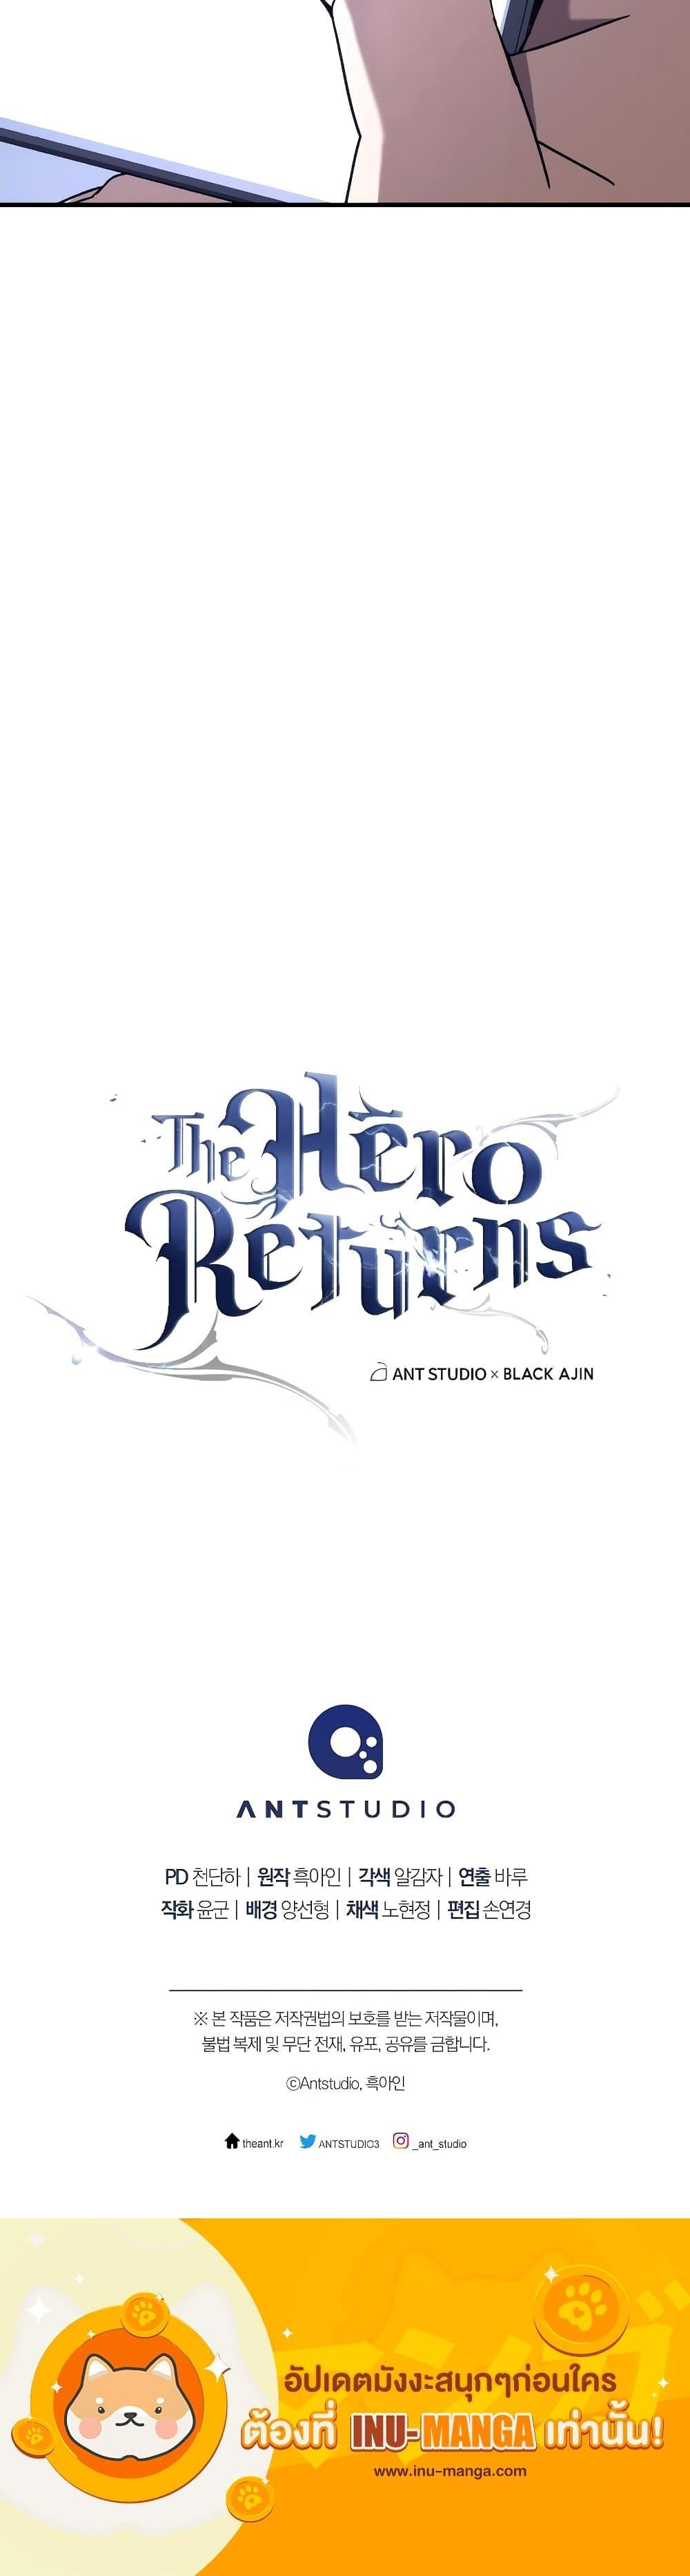 The Hero Returns 63 21